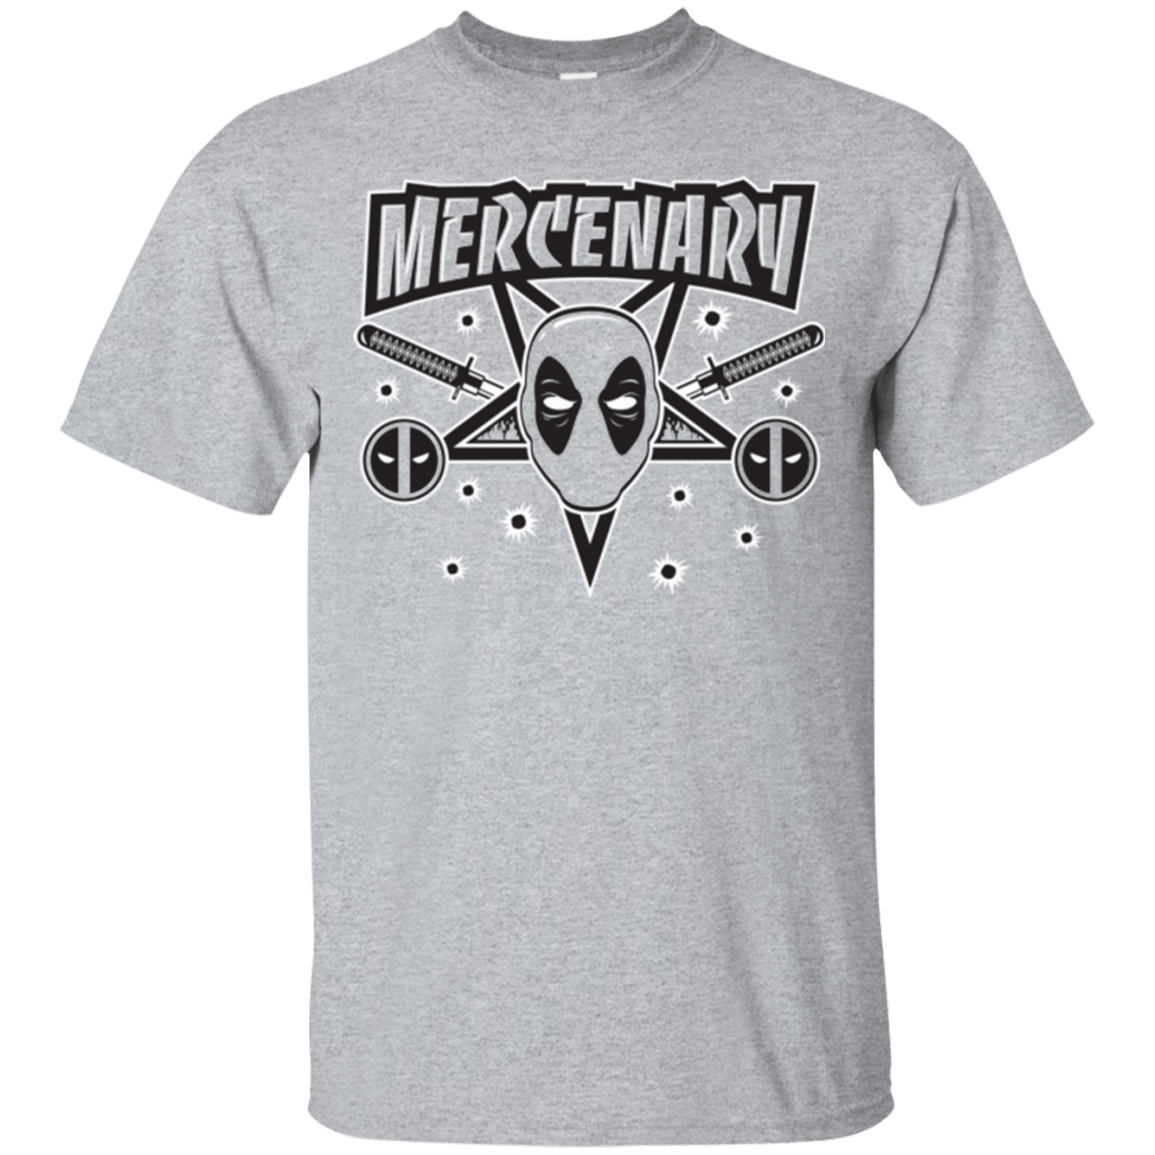 T-Shirts Sport Grey / Small Mercenary (1) T-Shirt